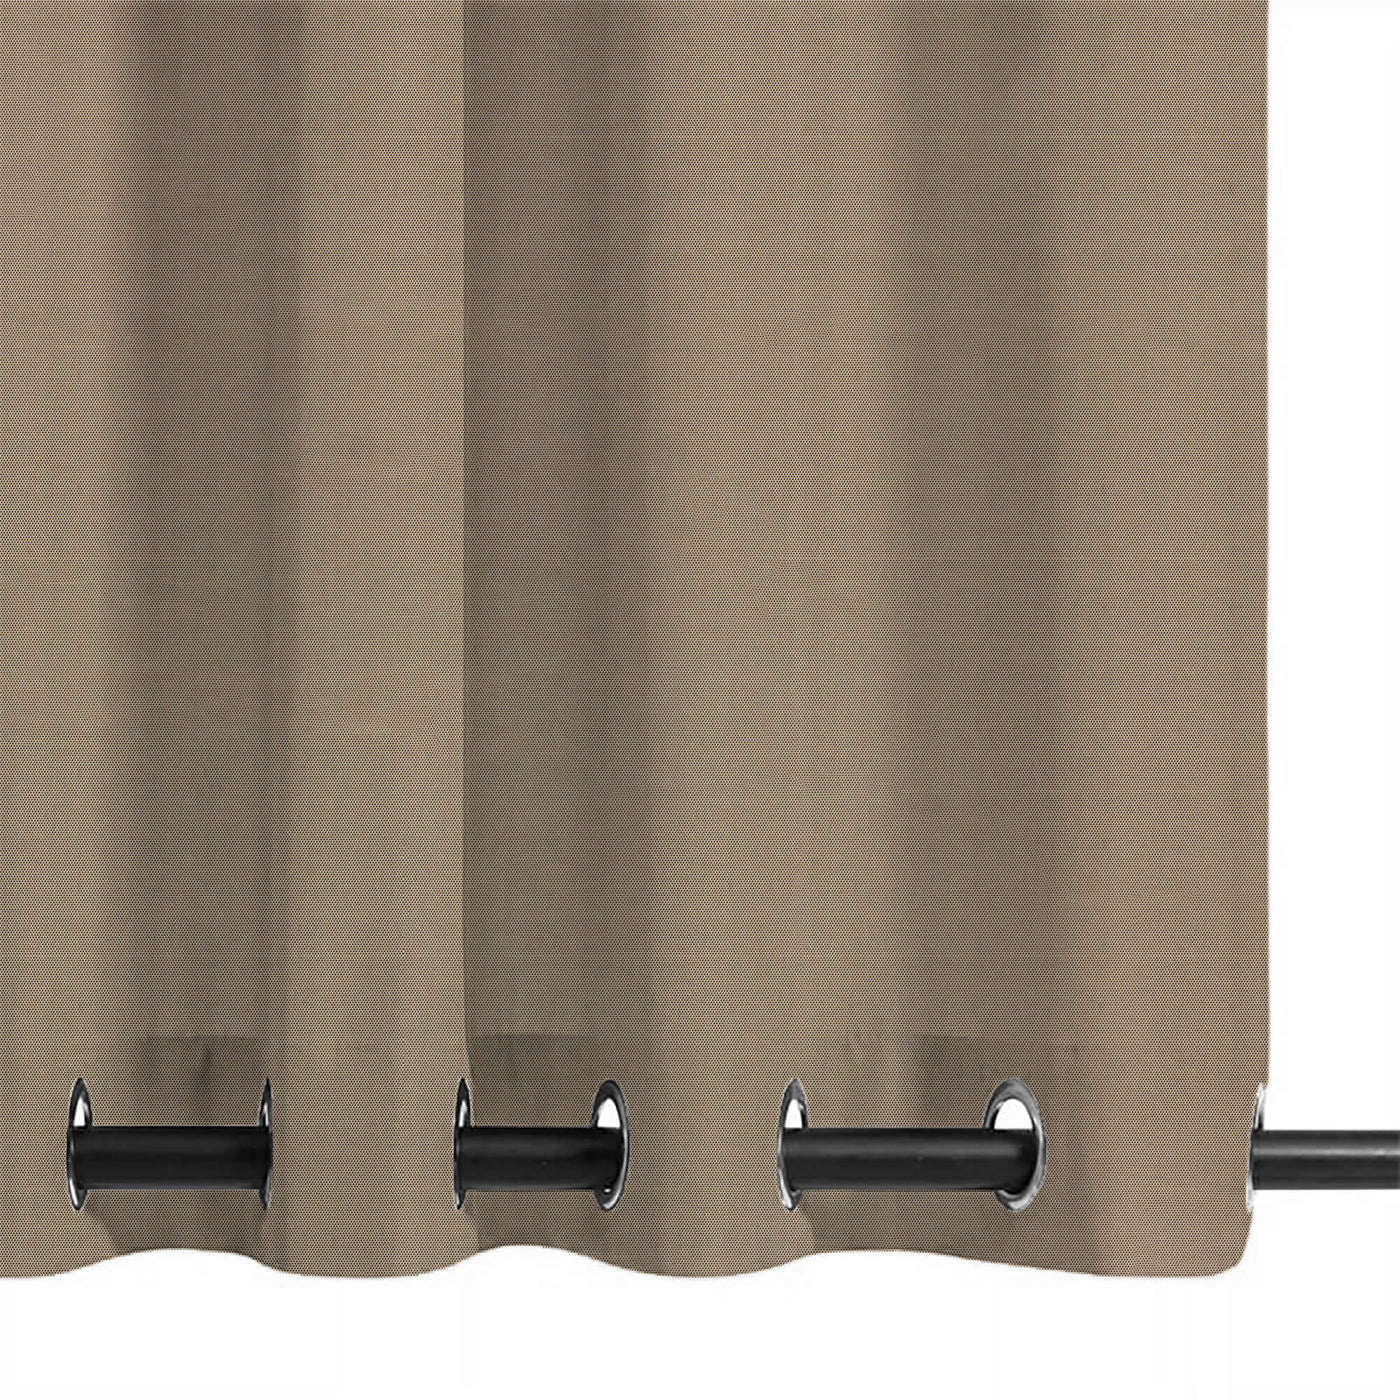 PENGI Outdoor Curtains Waterproof - Sailcloth Sepia Tint